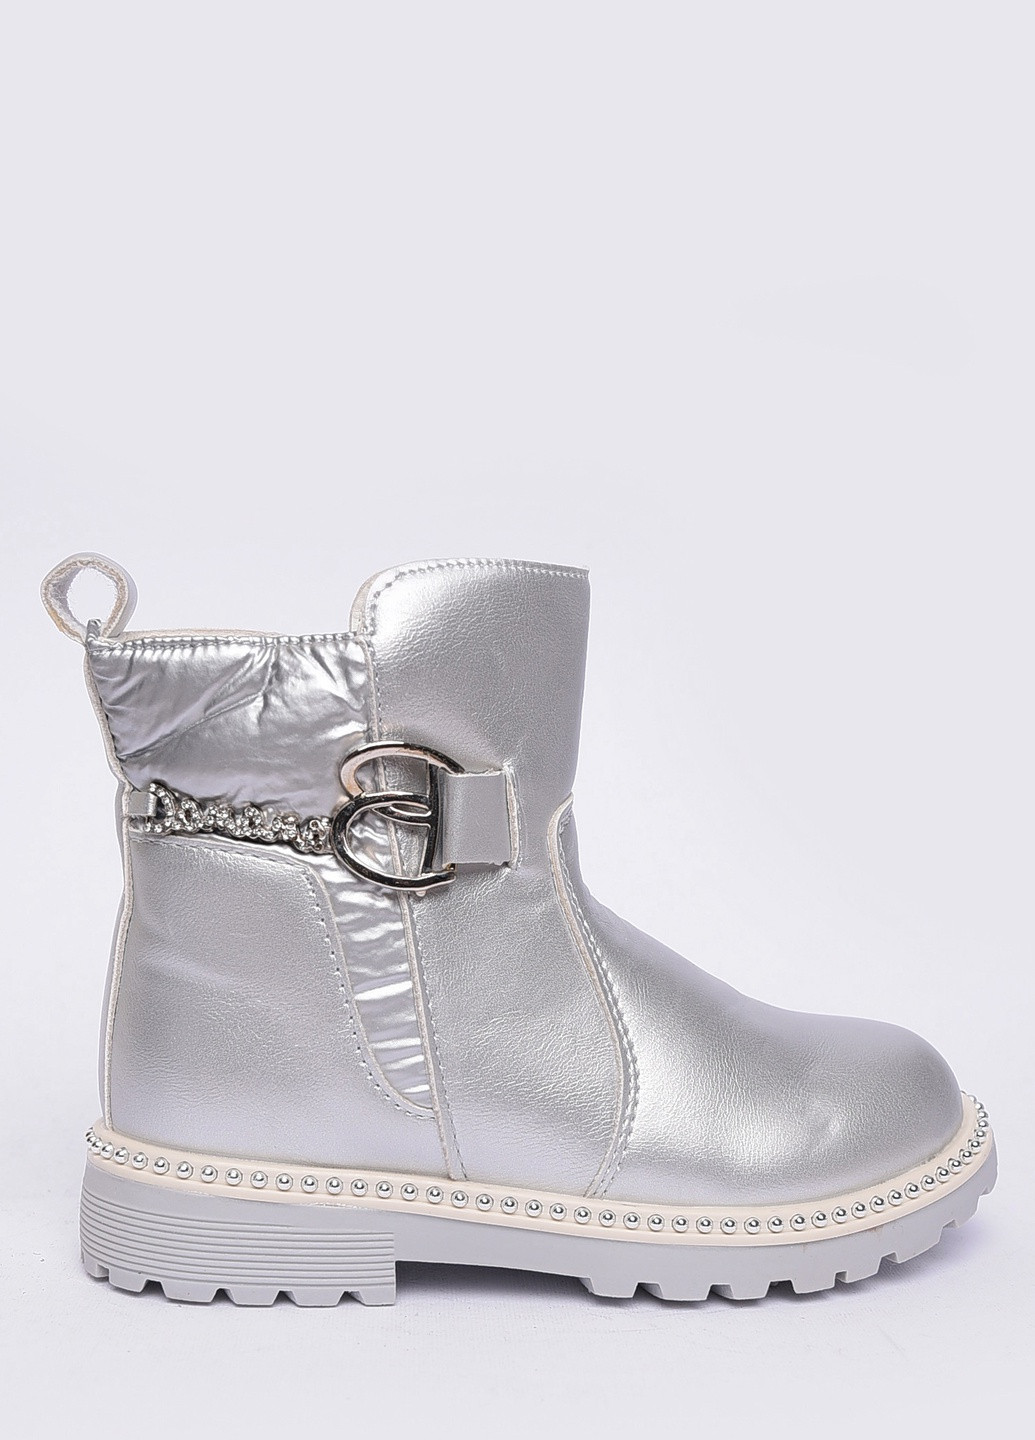 Серебряные кэжуал осенние ботинки детские демисезон серебро на флисе Let's Shop